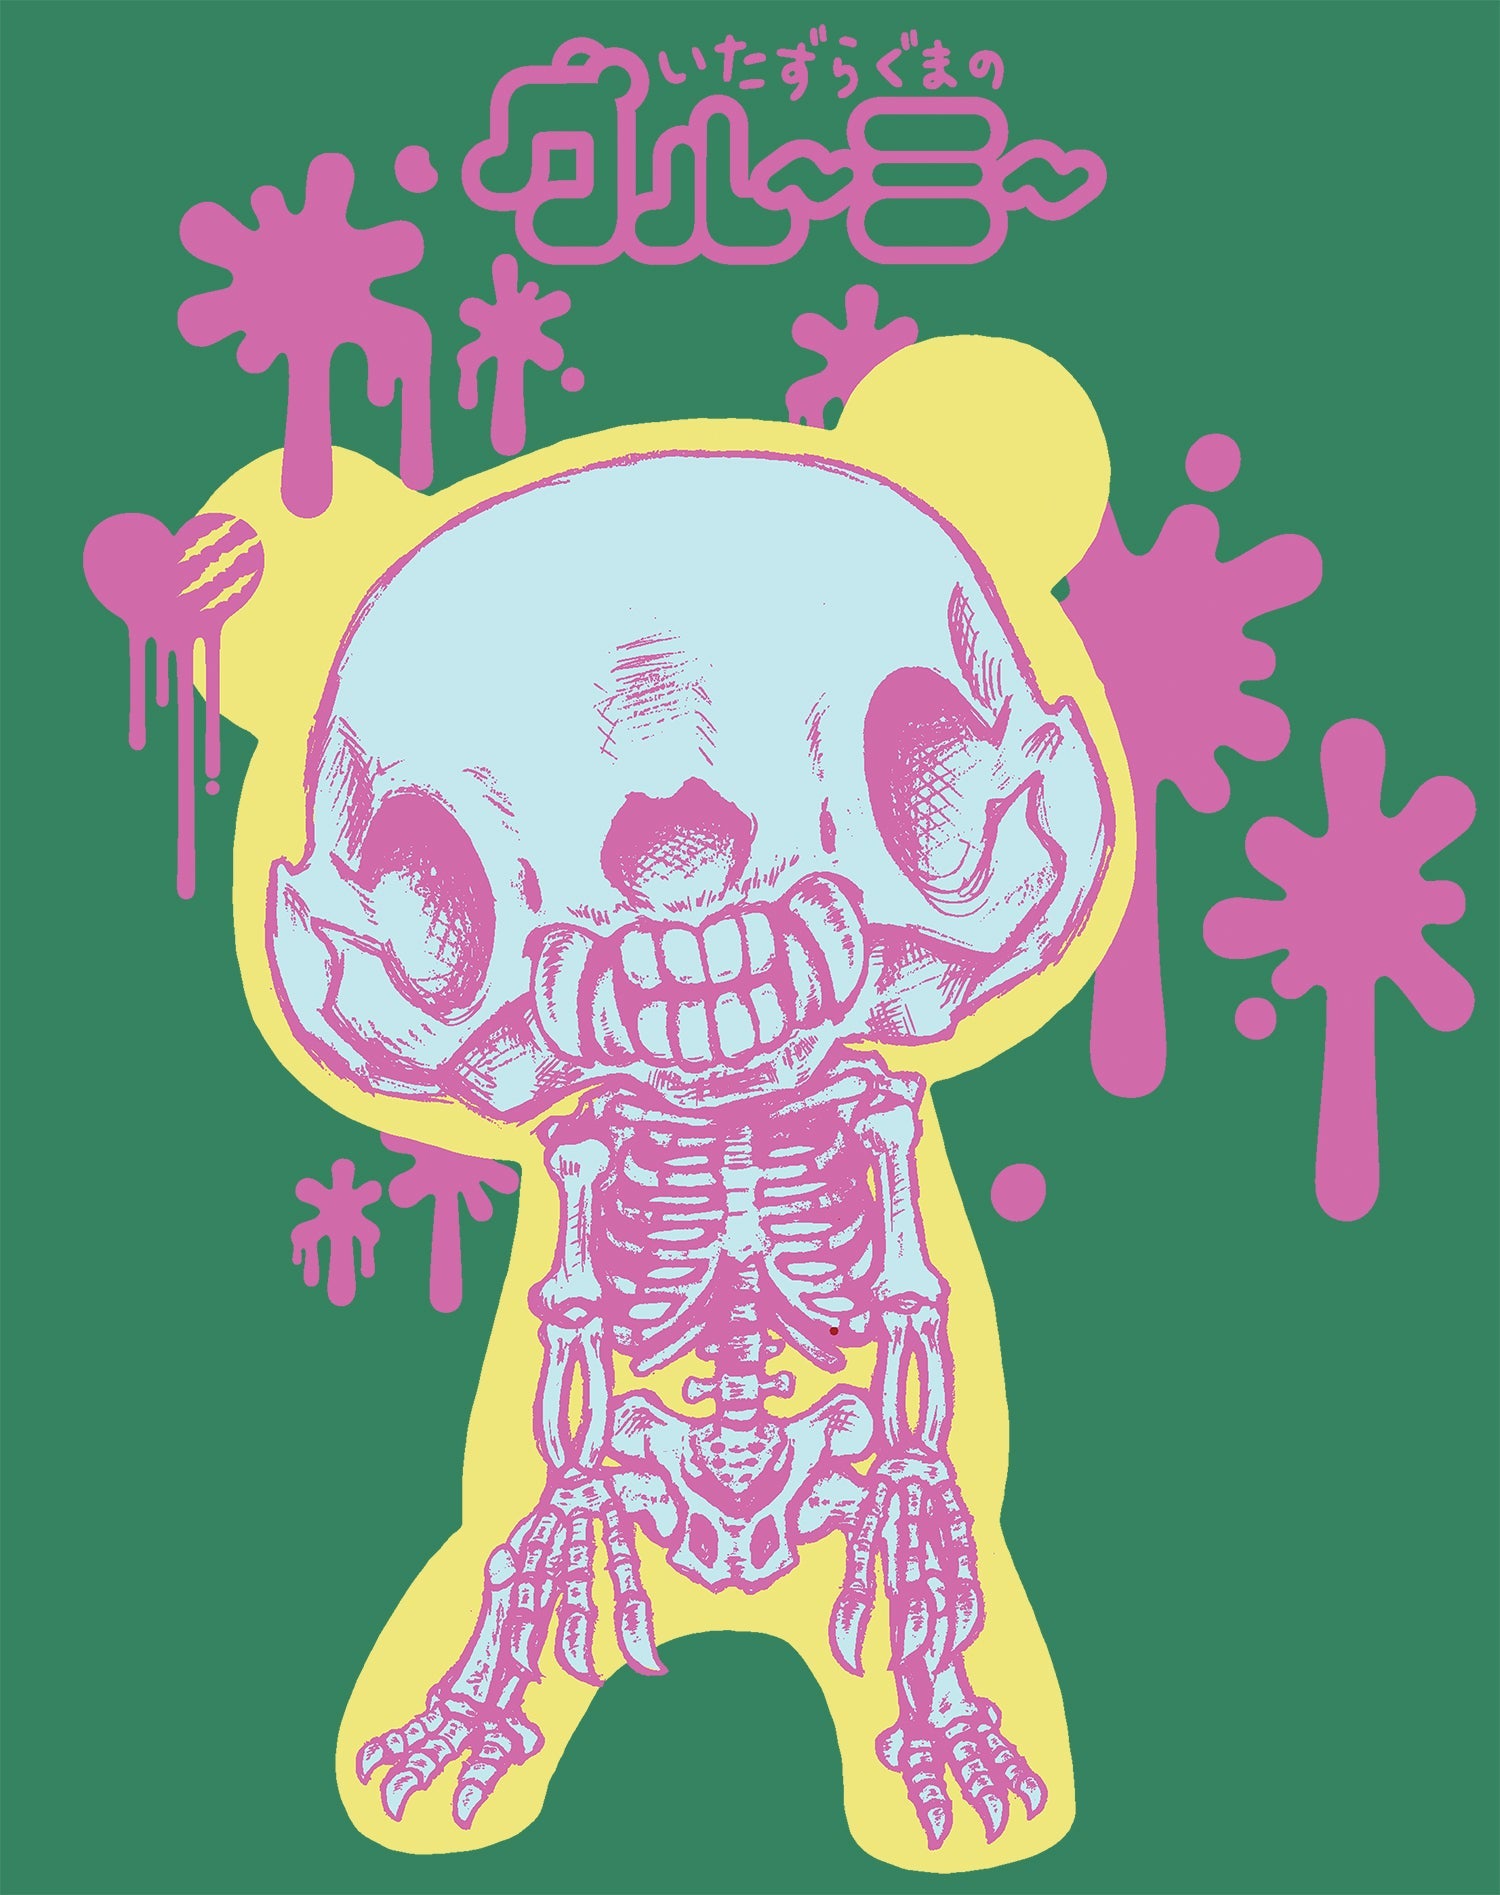 Gloomy Bear Skeleton Pose Official Women's T-shirt